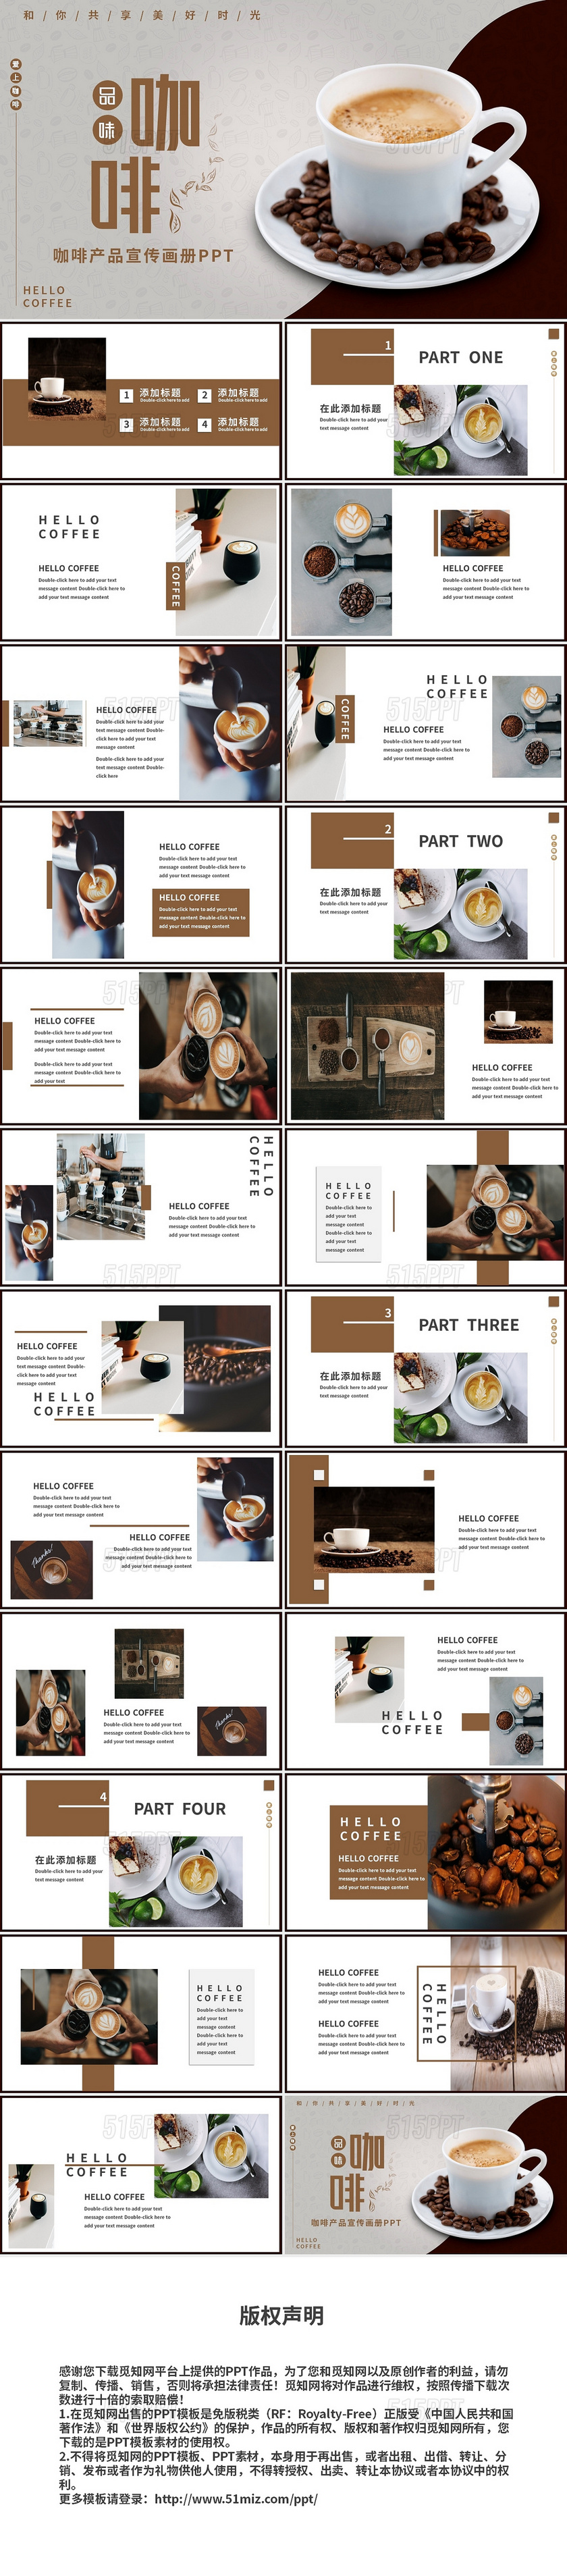 简约文艺咖啡产品宣传主题画册PPT模板